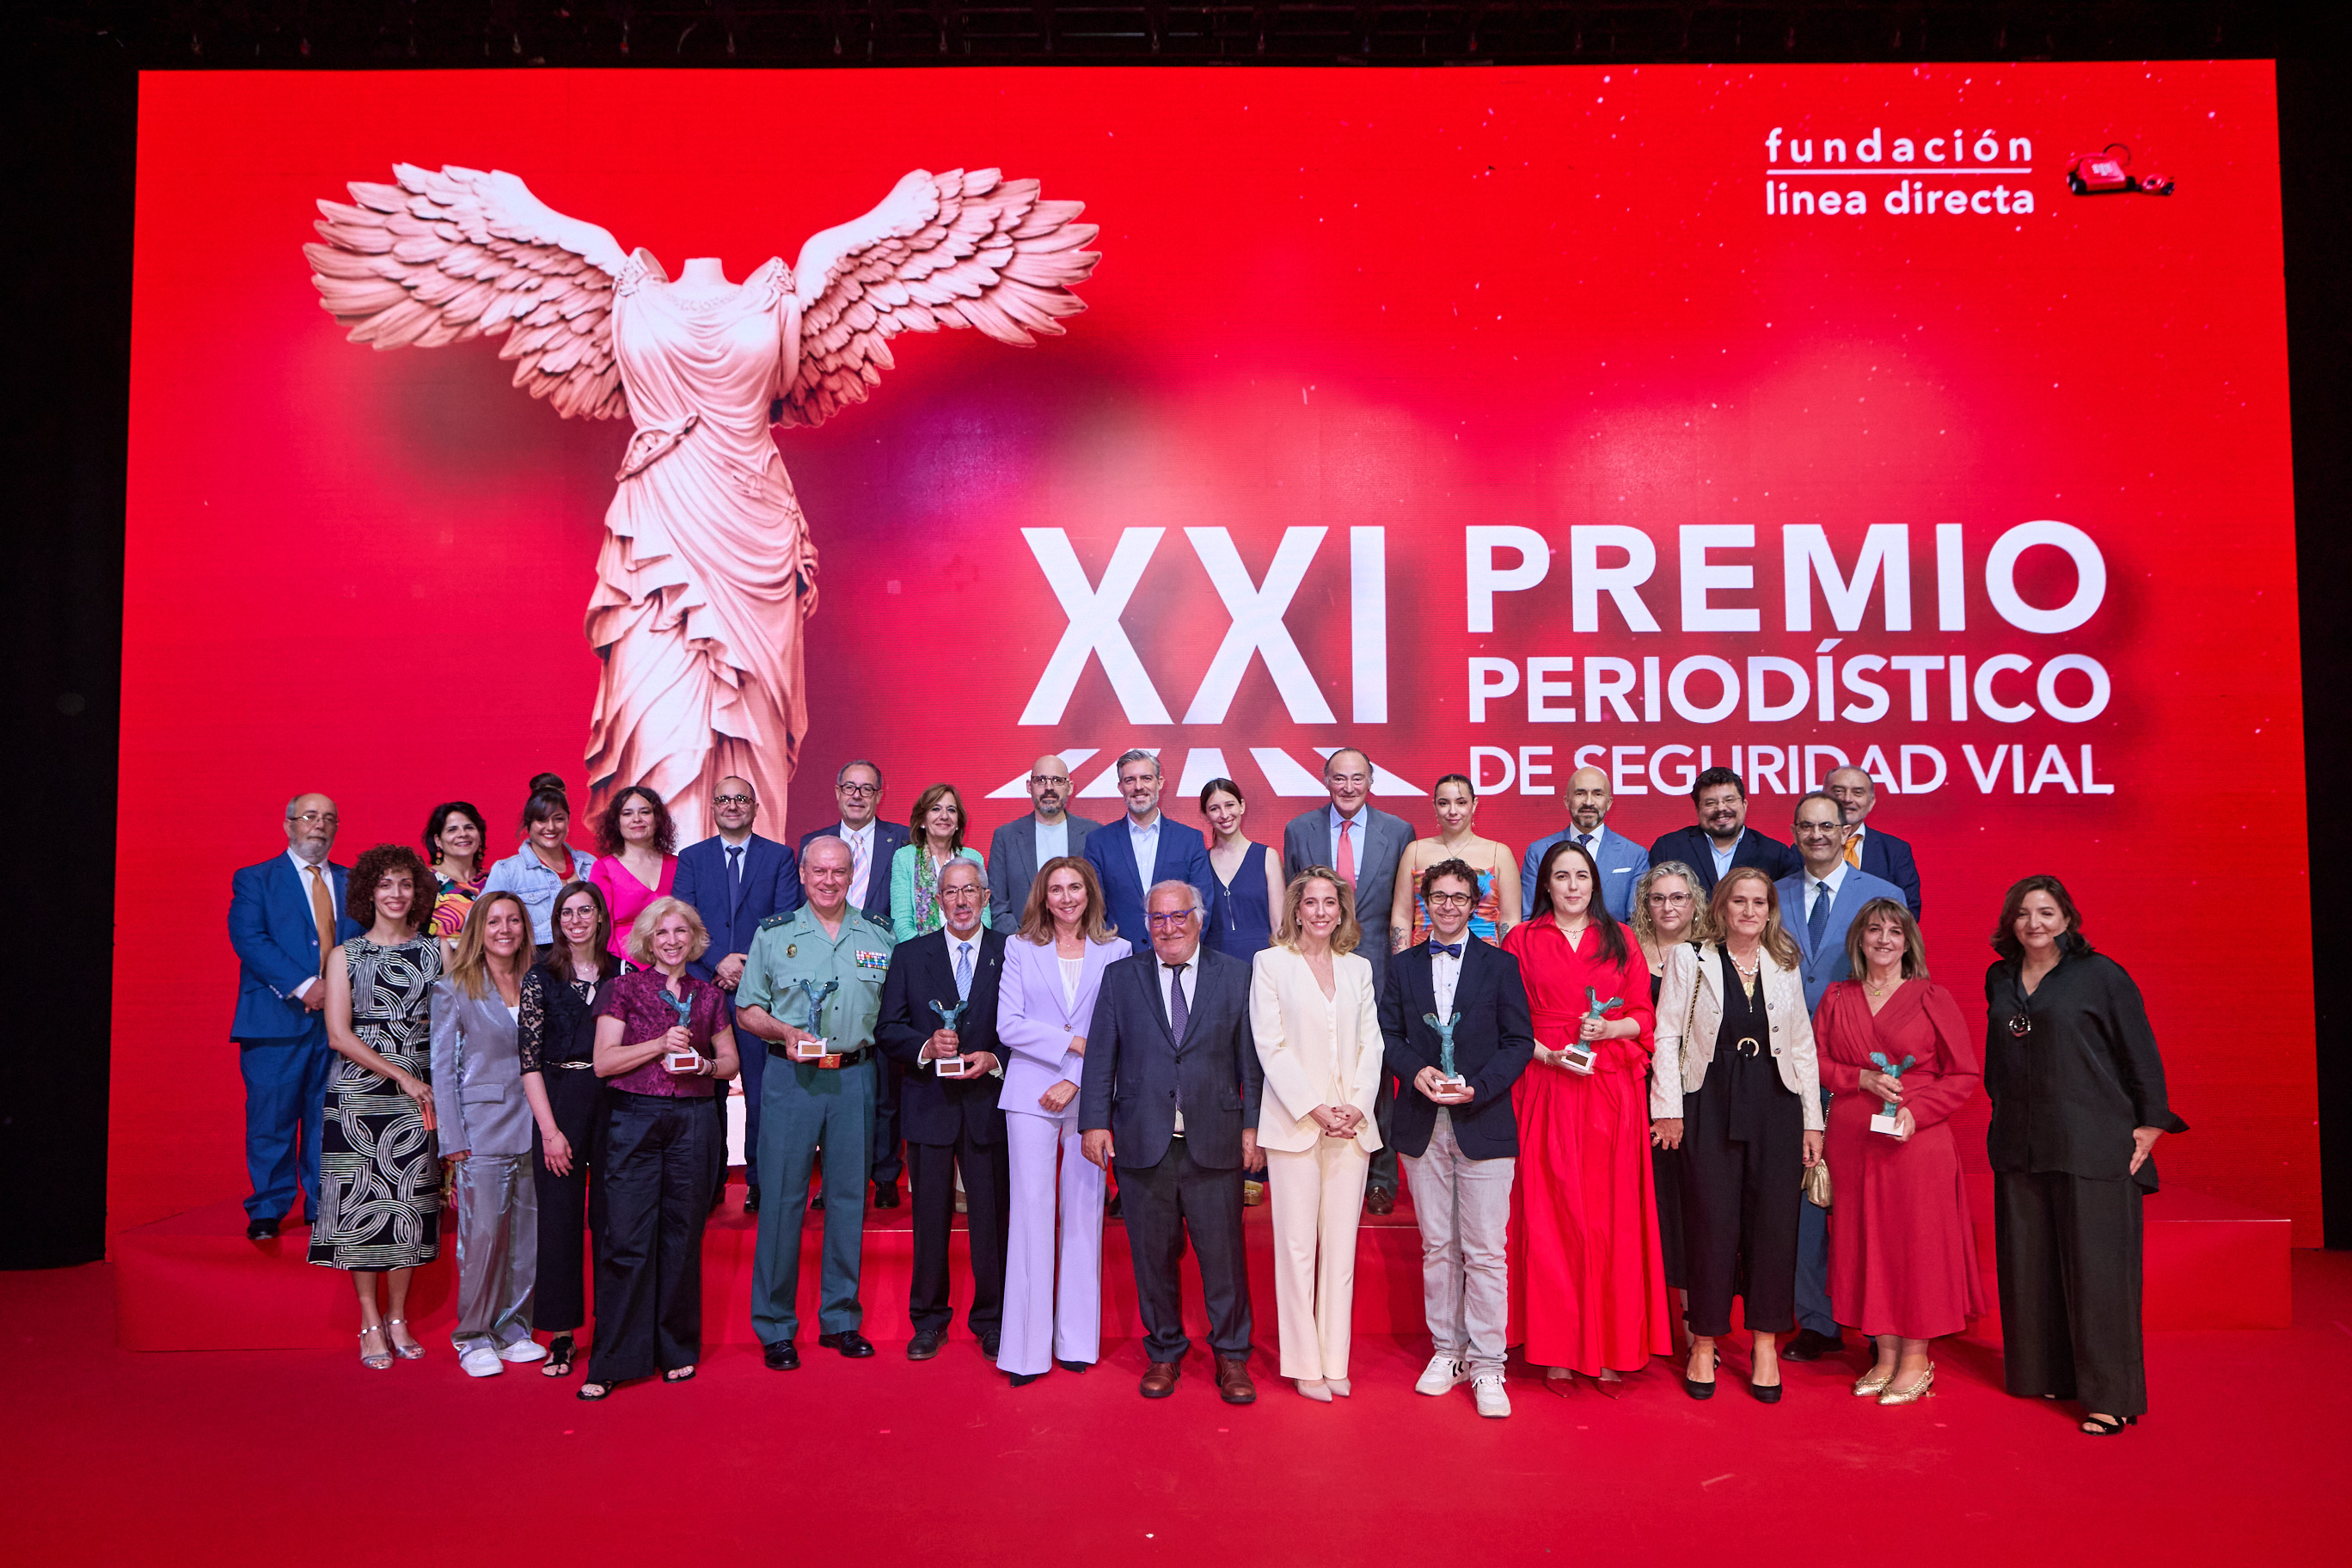 Ganadores y jurados del XXI Premio Periodístico Seguridad Vial de la Fundación Línea Directa